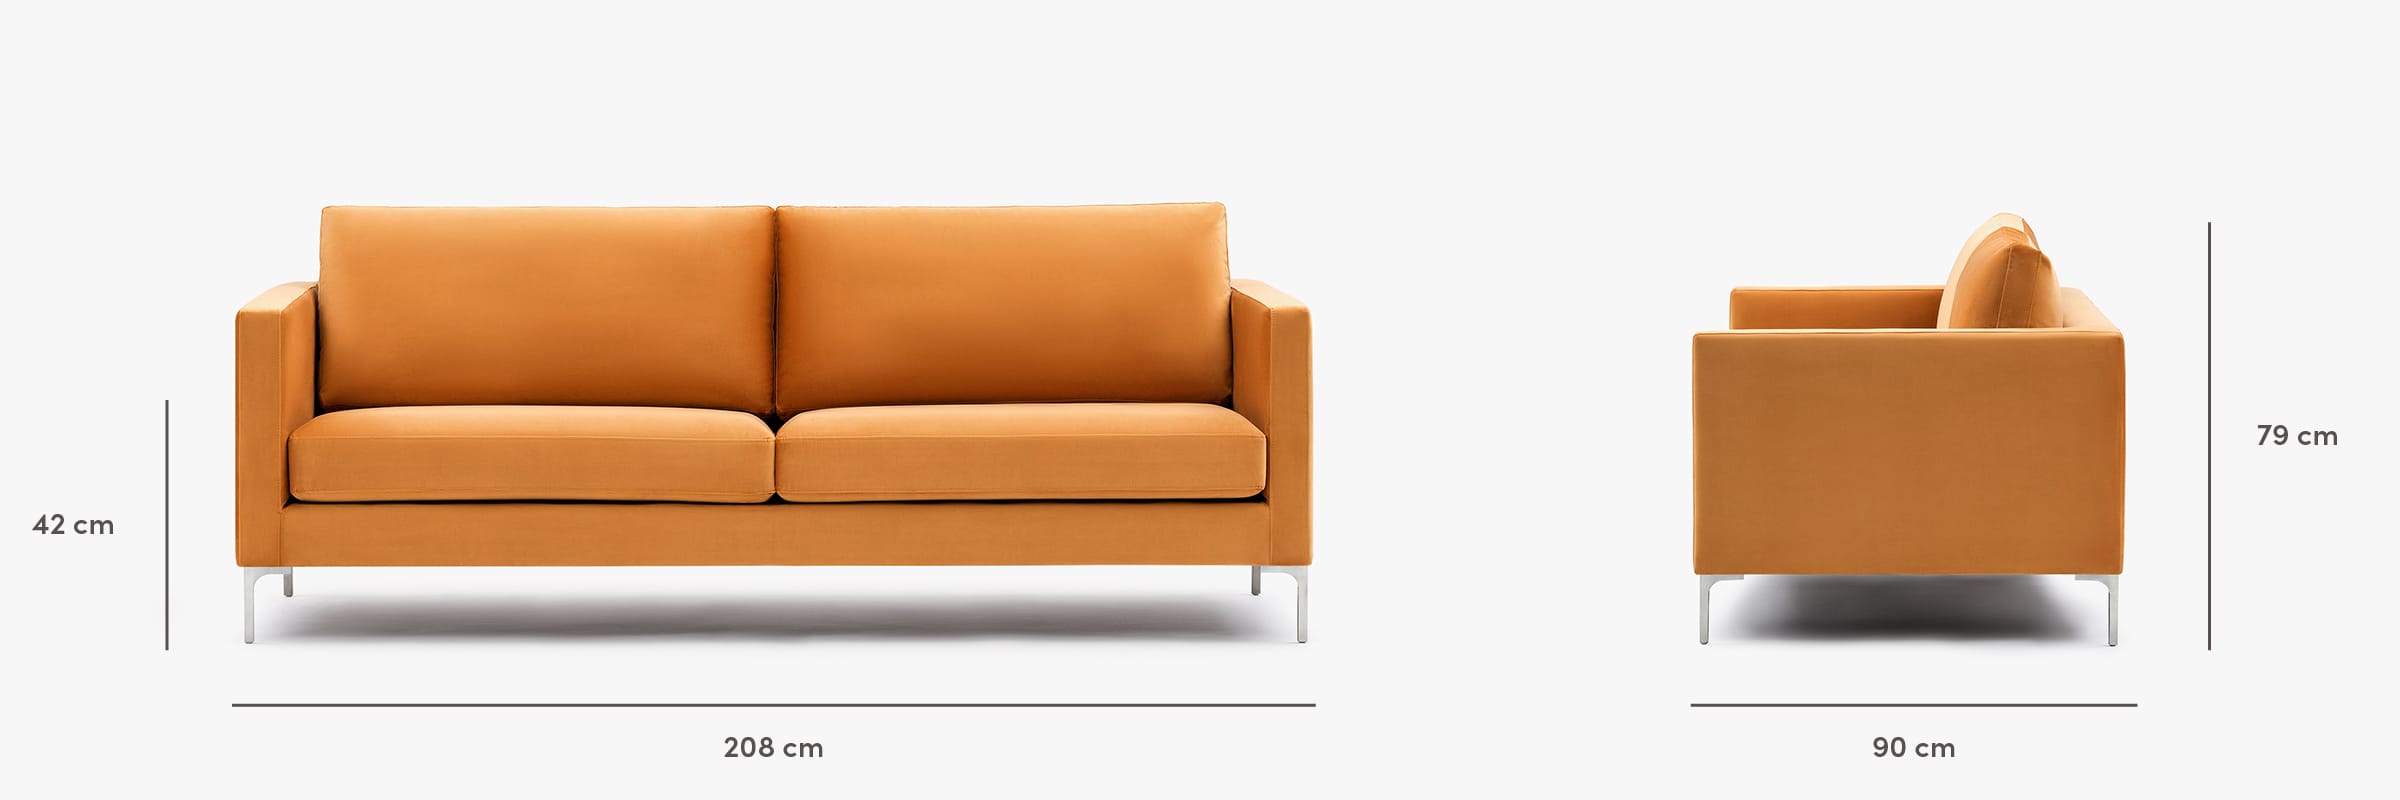 The monaco sofa dimensions